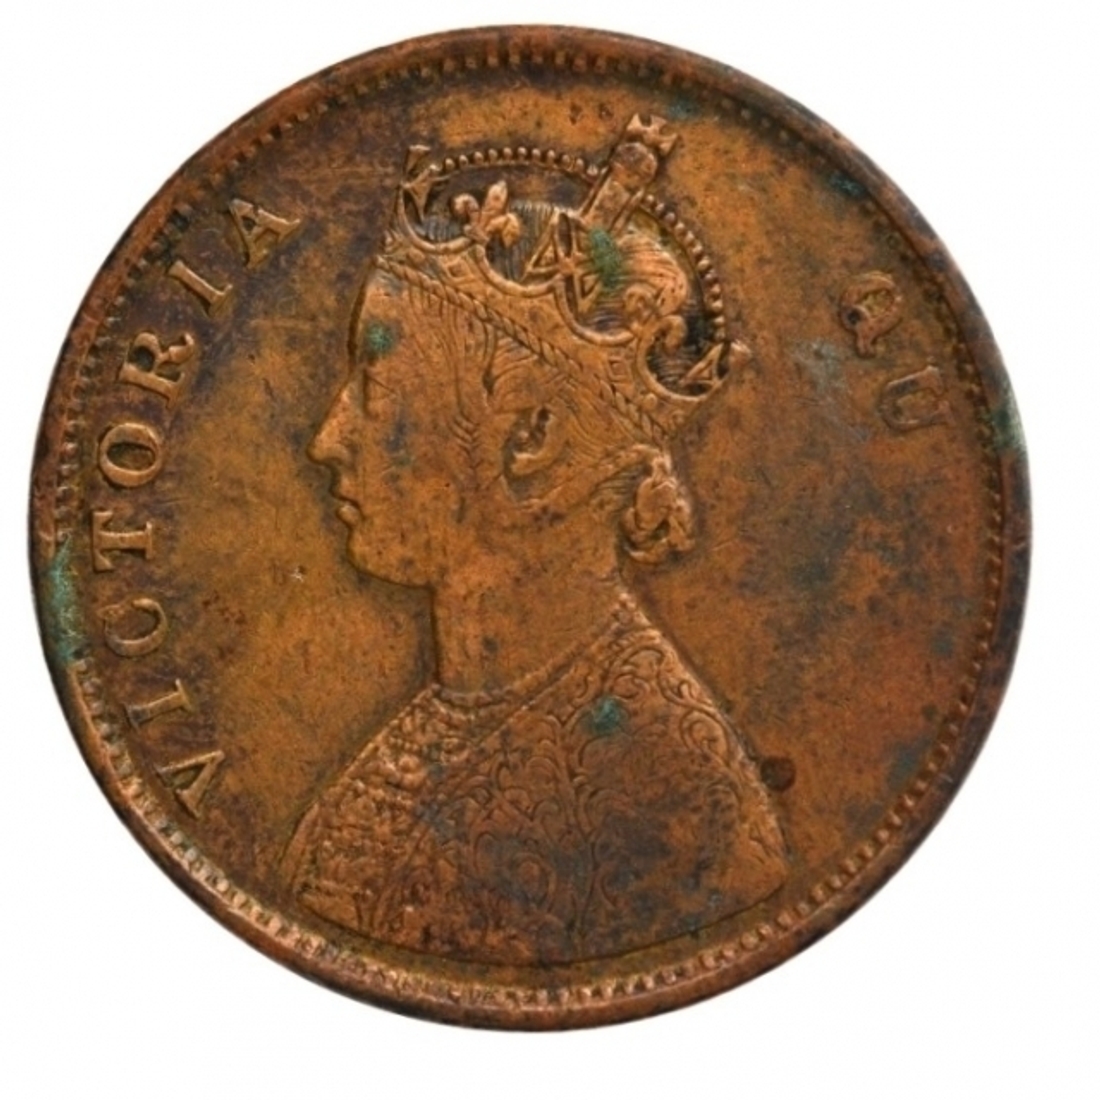 Error Copper Half Anna Coin of Victoria Queen of Madras Mint of 1862.